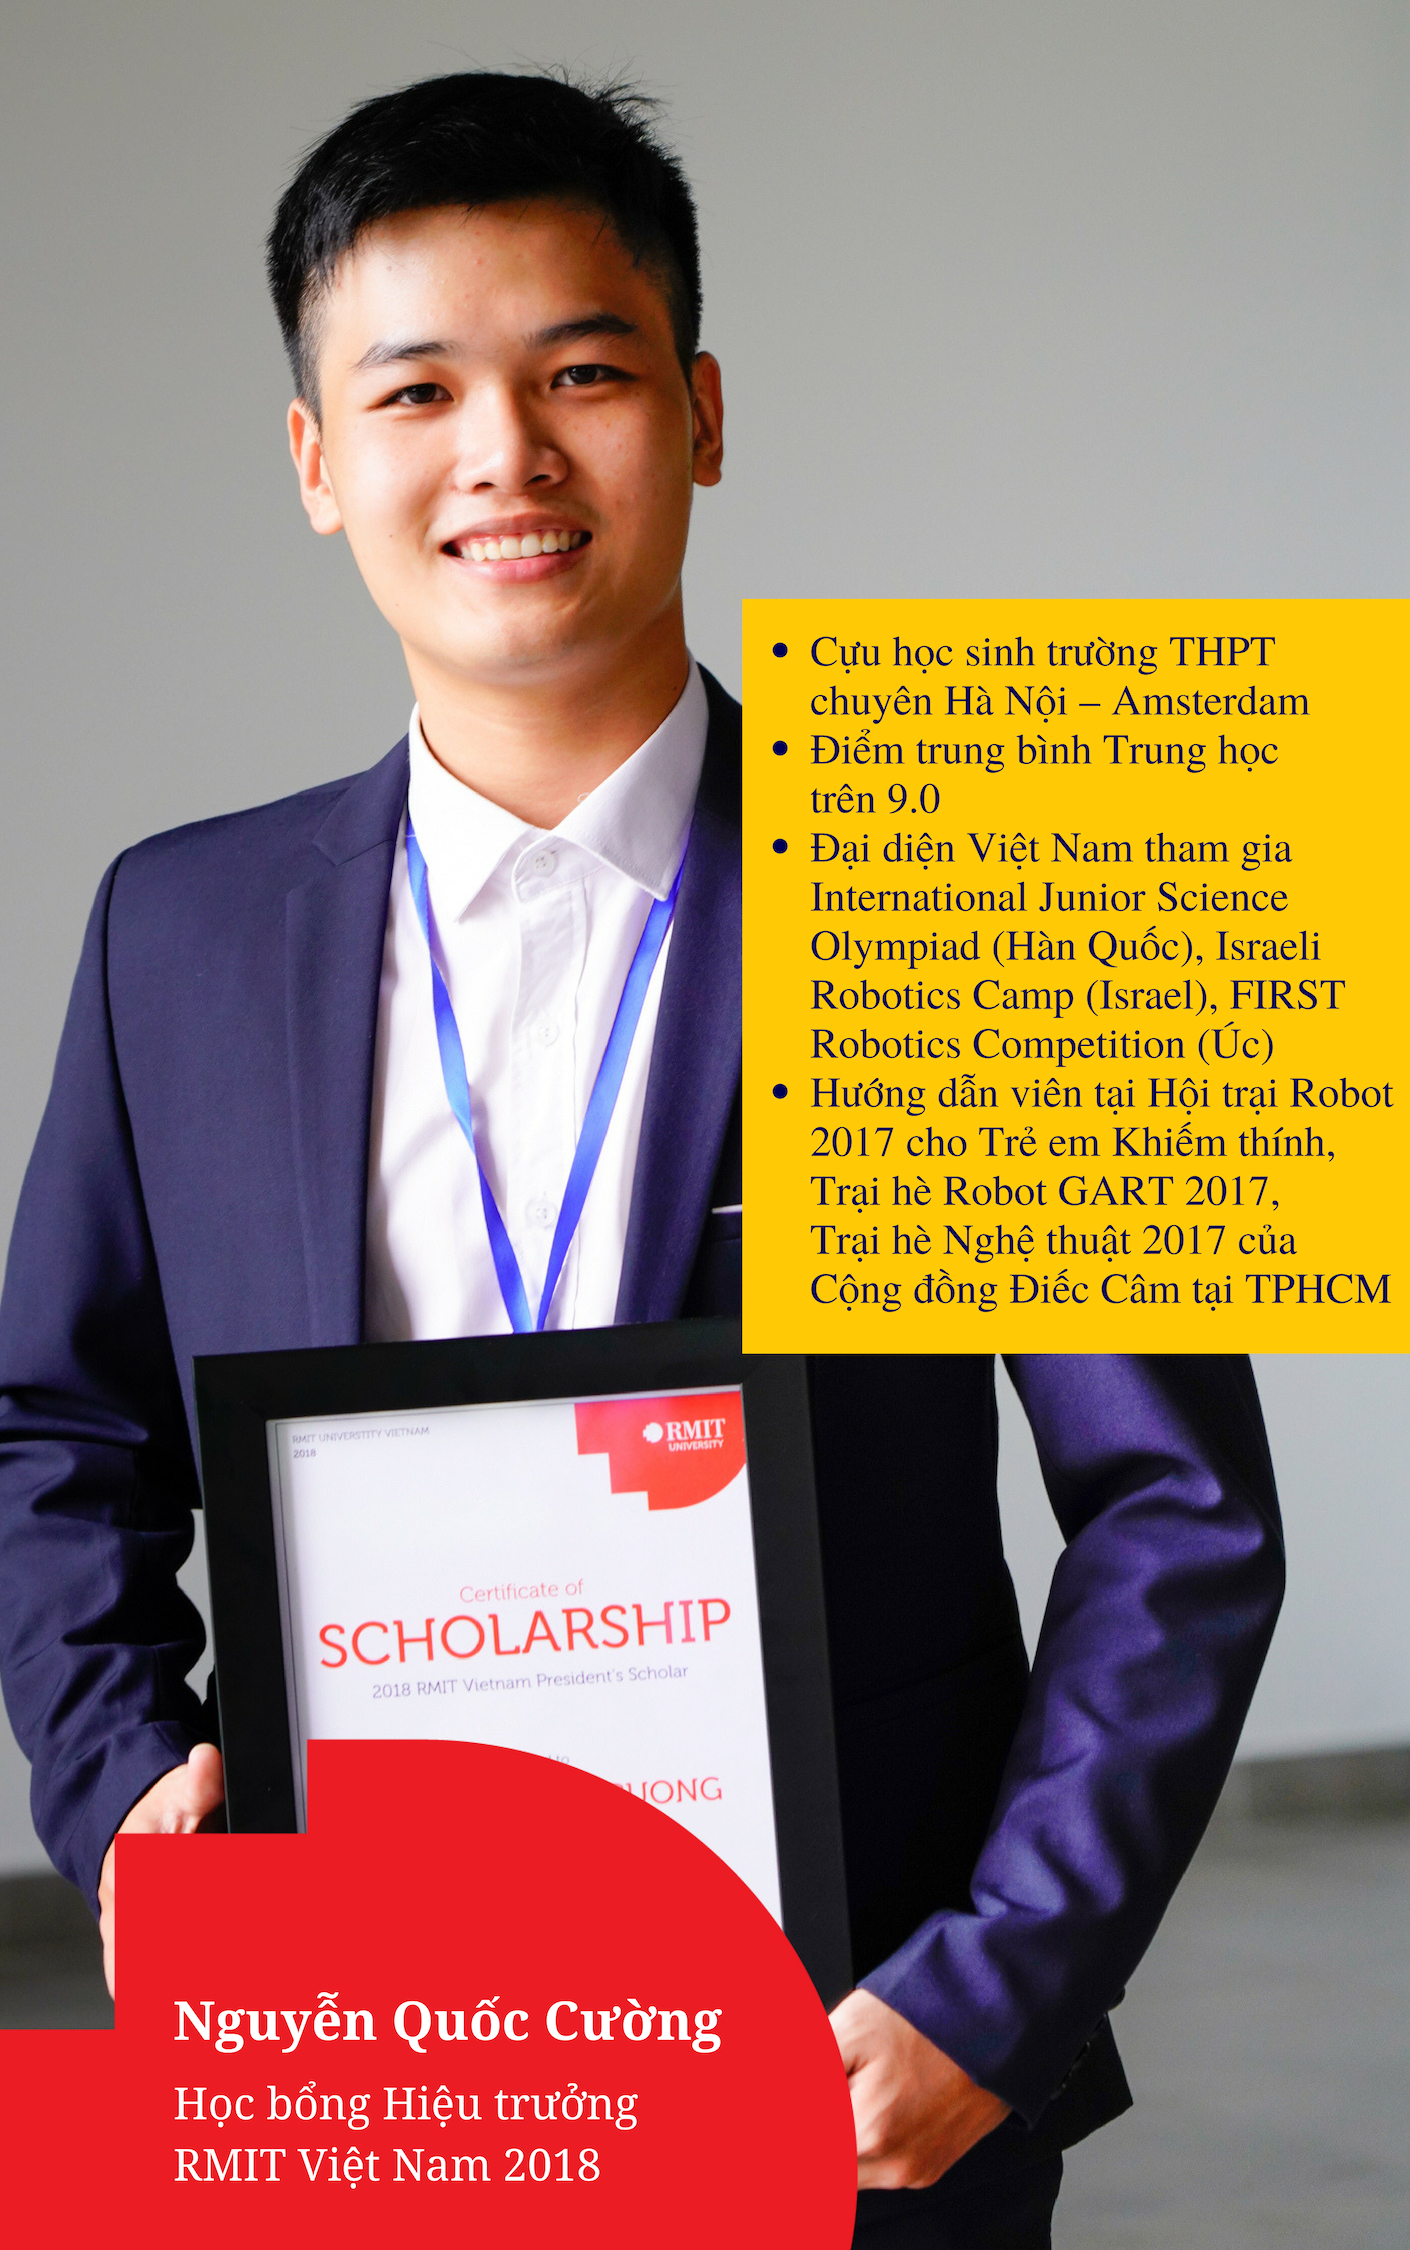 Nguyễn Quốc Cường, Học bổng Hiệu trưởng 2018, tân sinh viên ngành Kỹ thuật (Kỹ sư phần mềm)(Danh dự) tại RMIT Việt Nam.